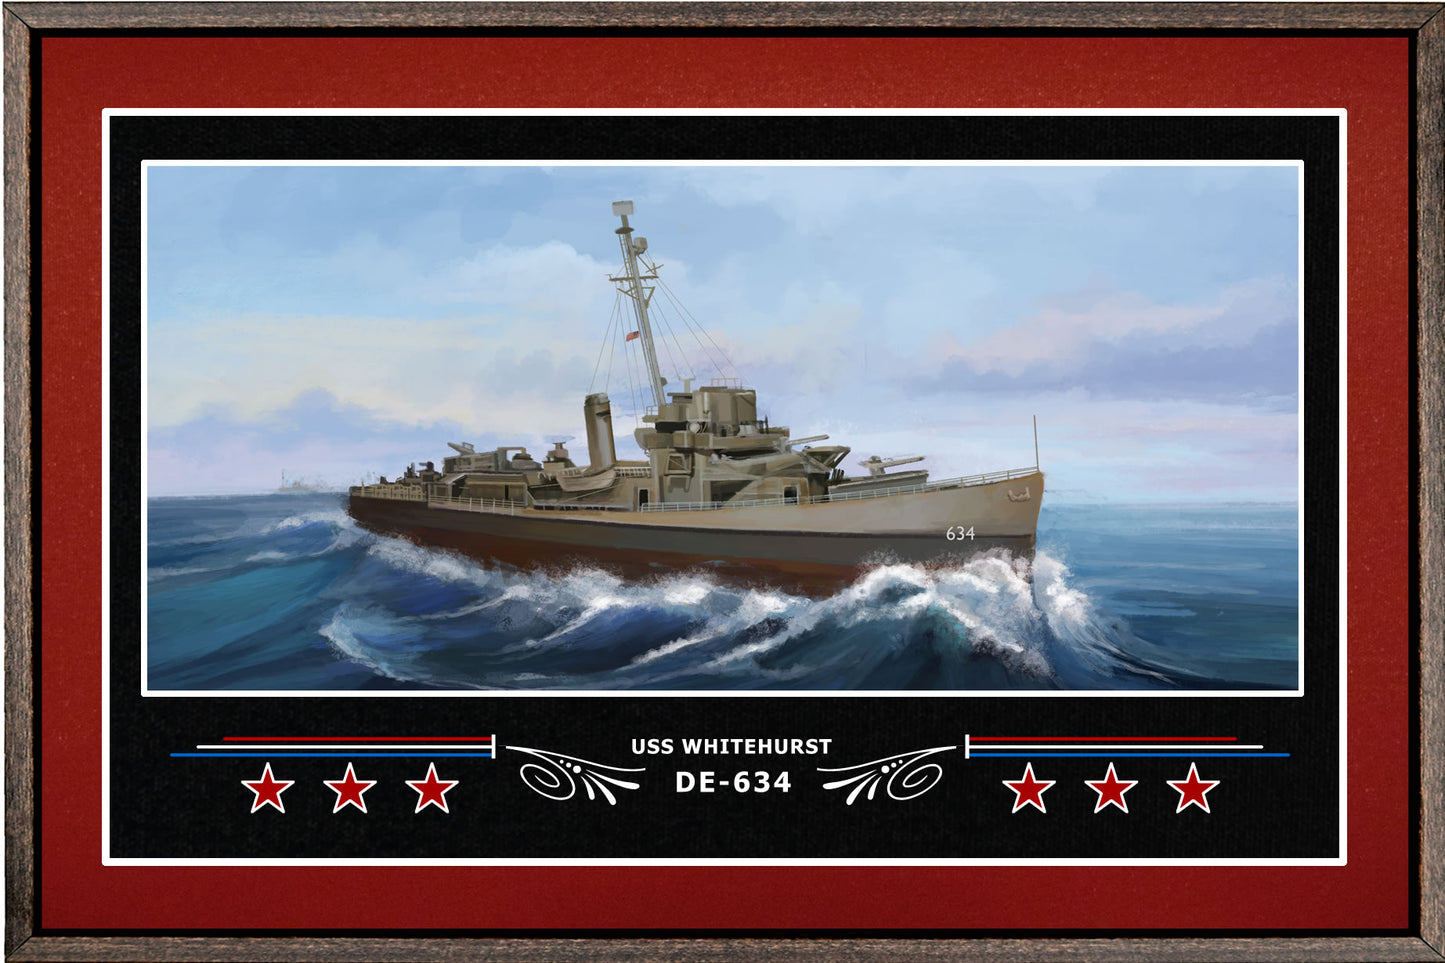 USS WHITEHURST DE 634 BOX FRAMED CANVAS ART BURGUNDY